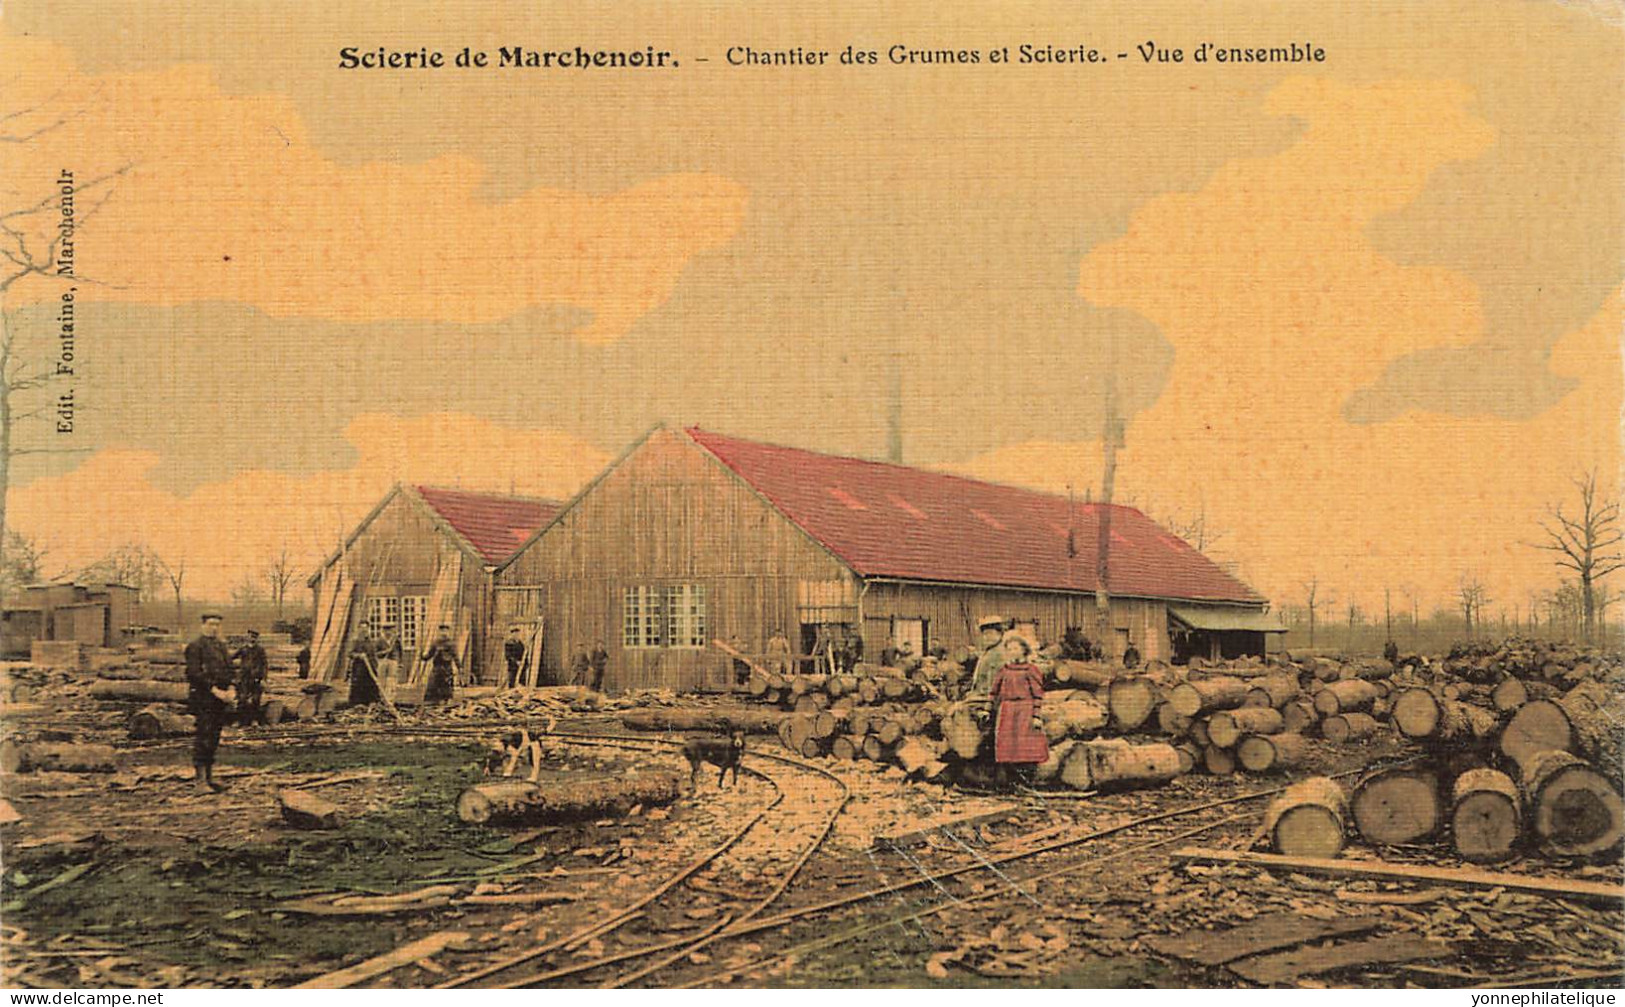 41 - LOIR ET CHER - MARCHENOIR - Scierie, Bois - Chantier Des Grumes, Vue D'ensemble - Toilée, Colorisée - Superbe 10637 - Marchenoir